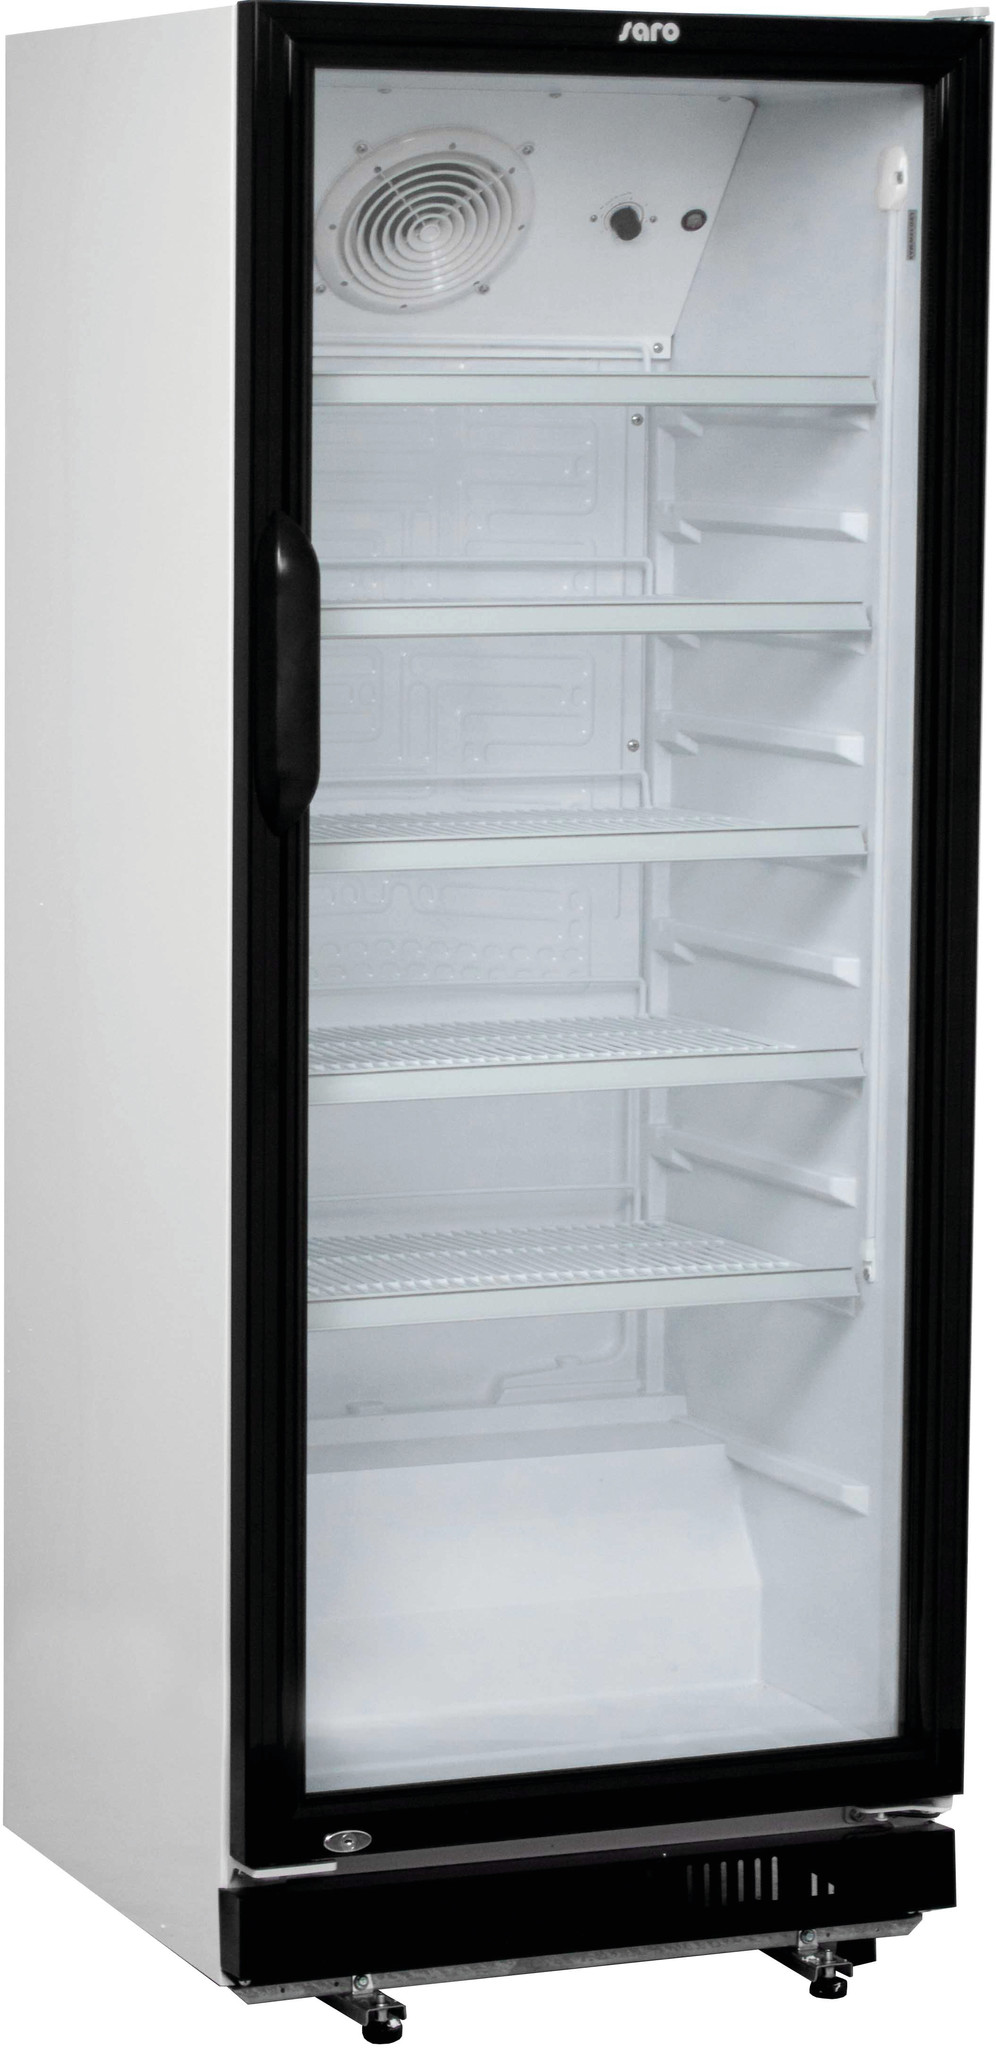 Kühlschrank mit Glastür | 4 Roste verstellbar | LED Beleuchtung| 310 Liter | 620x635x(h)1562mm